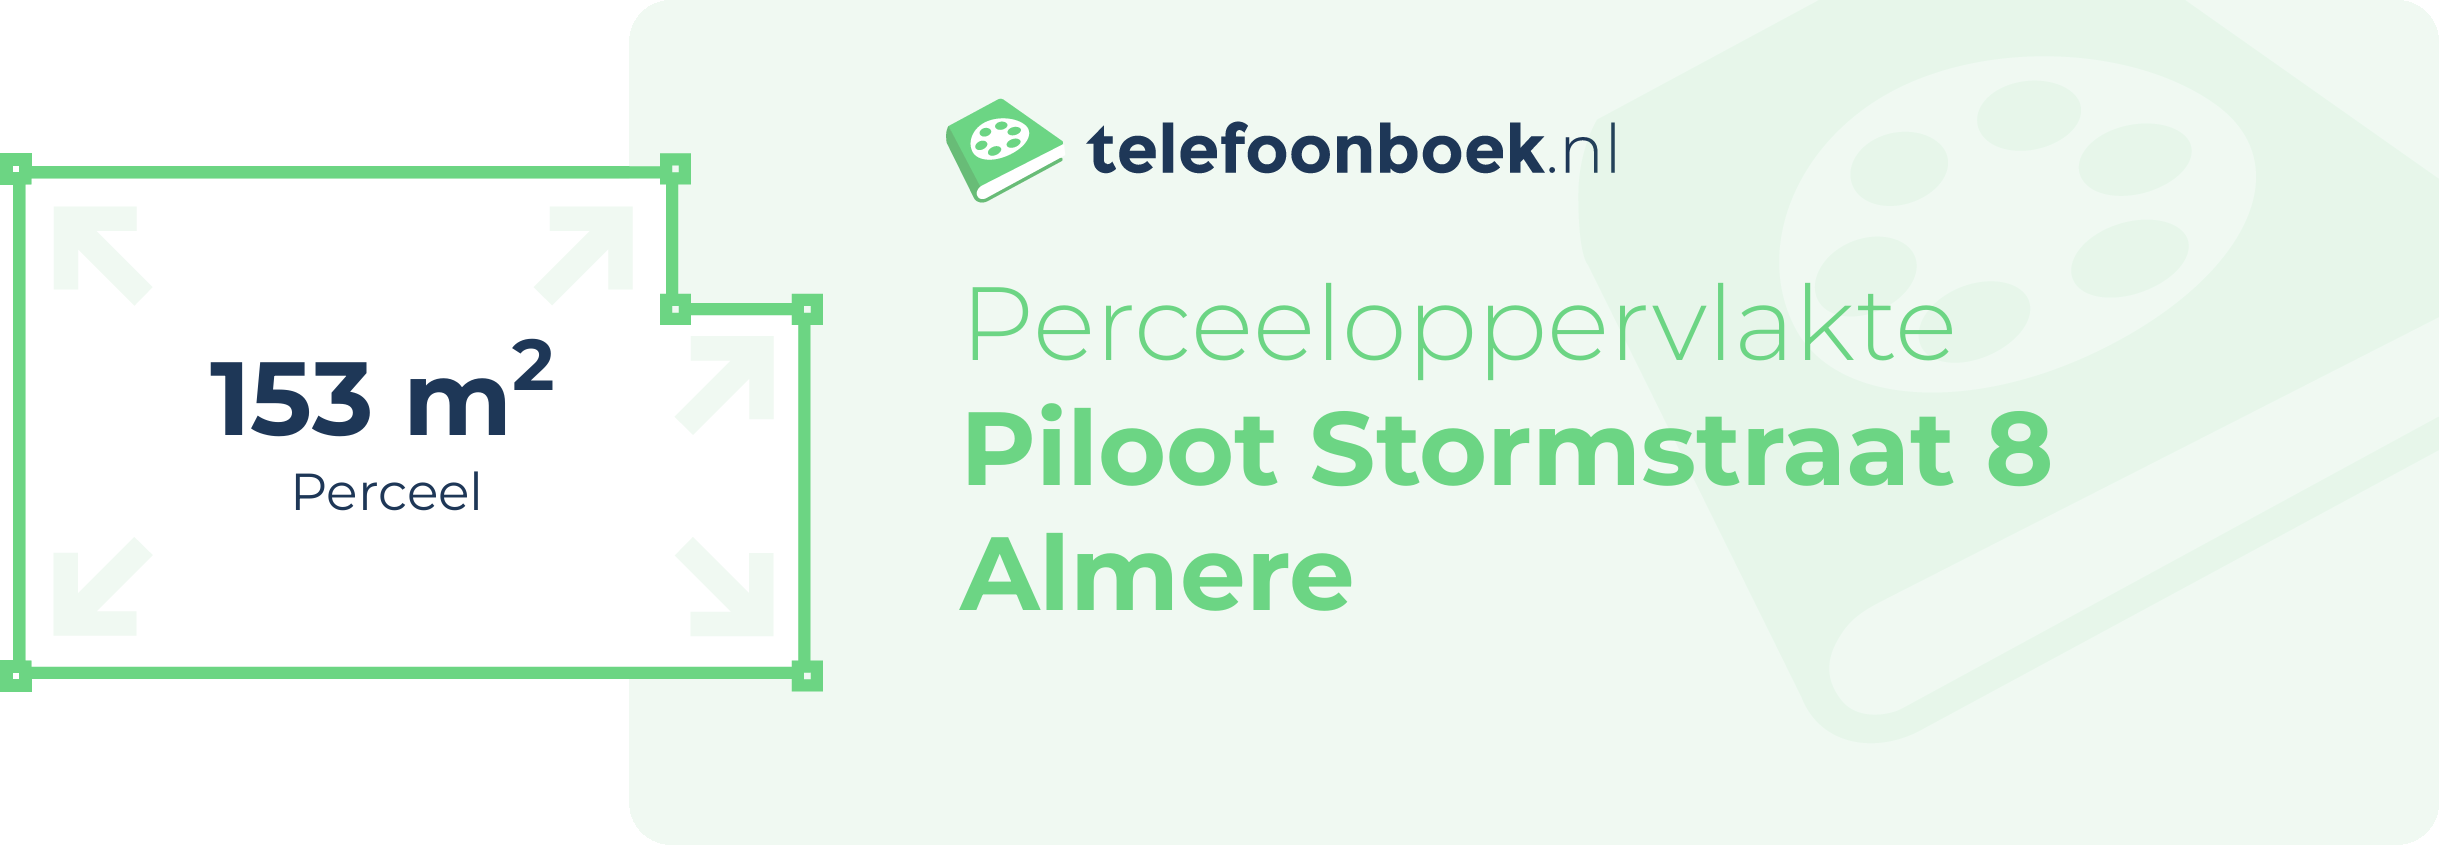 Perceeloppervlakte Piloot Stormstraat 8 Almere